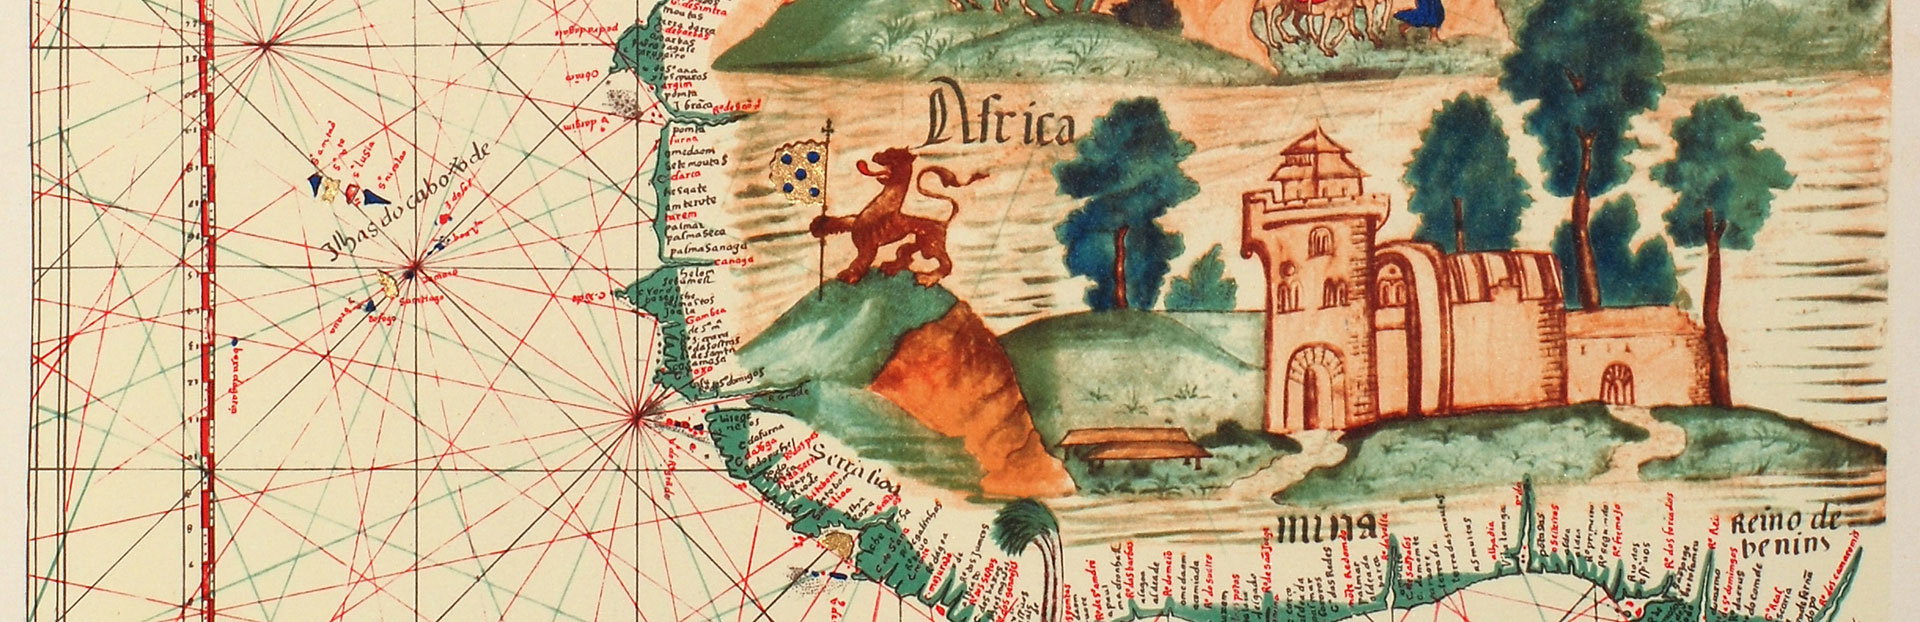 El interés de San Ignacio por África – África Occidental